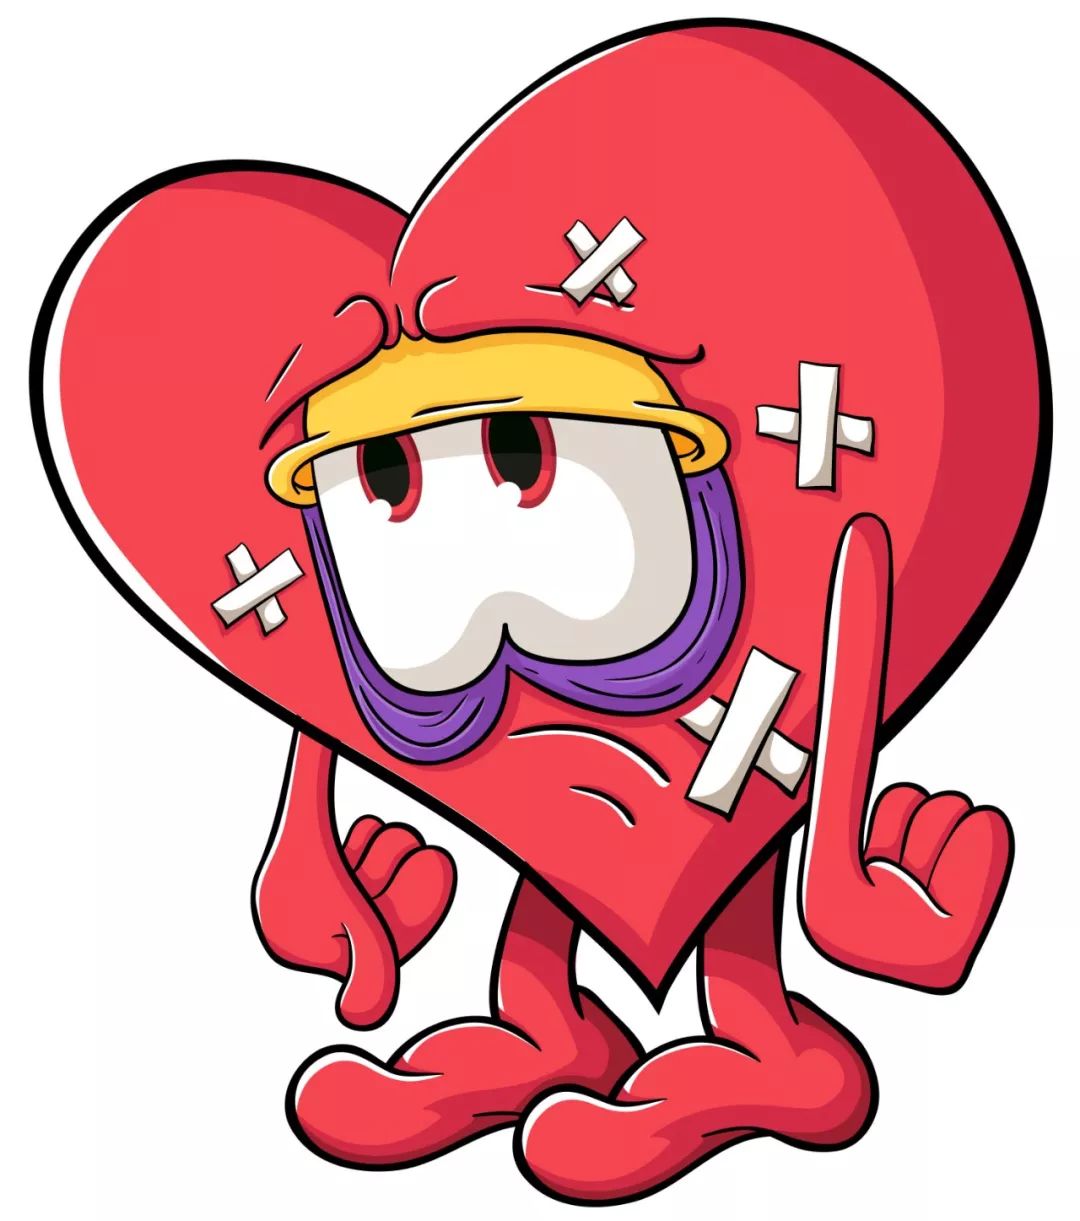 心脏养护指南:10条小技巧,让你的心更强大